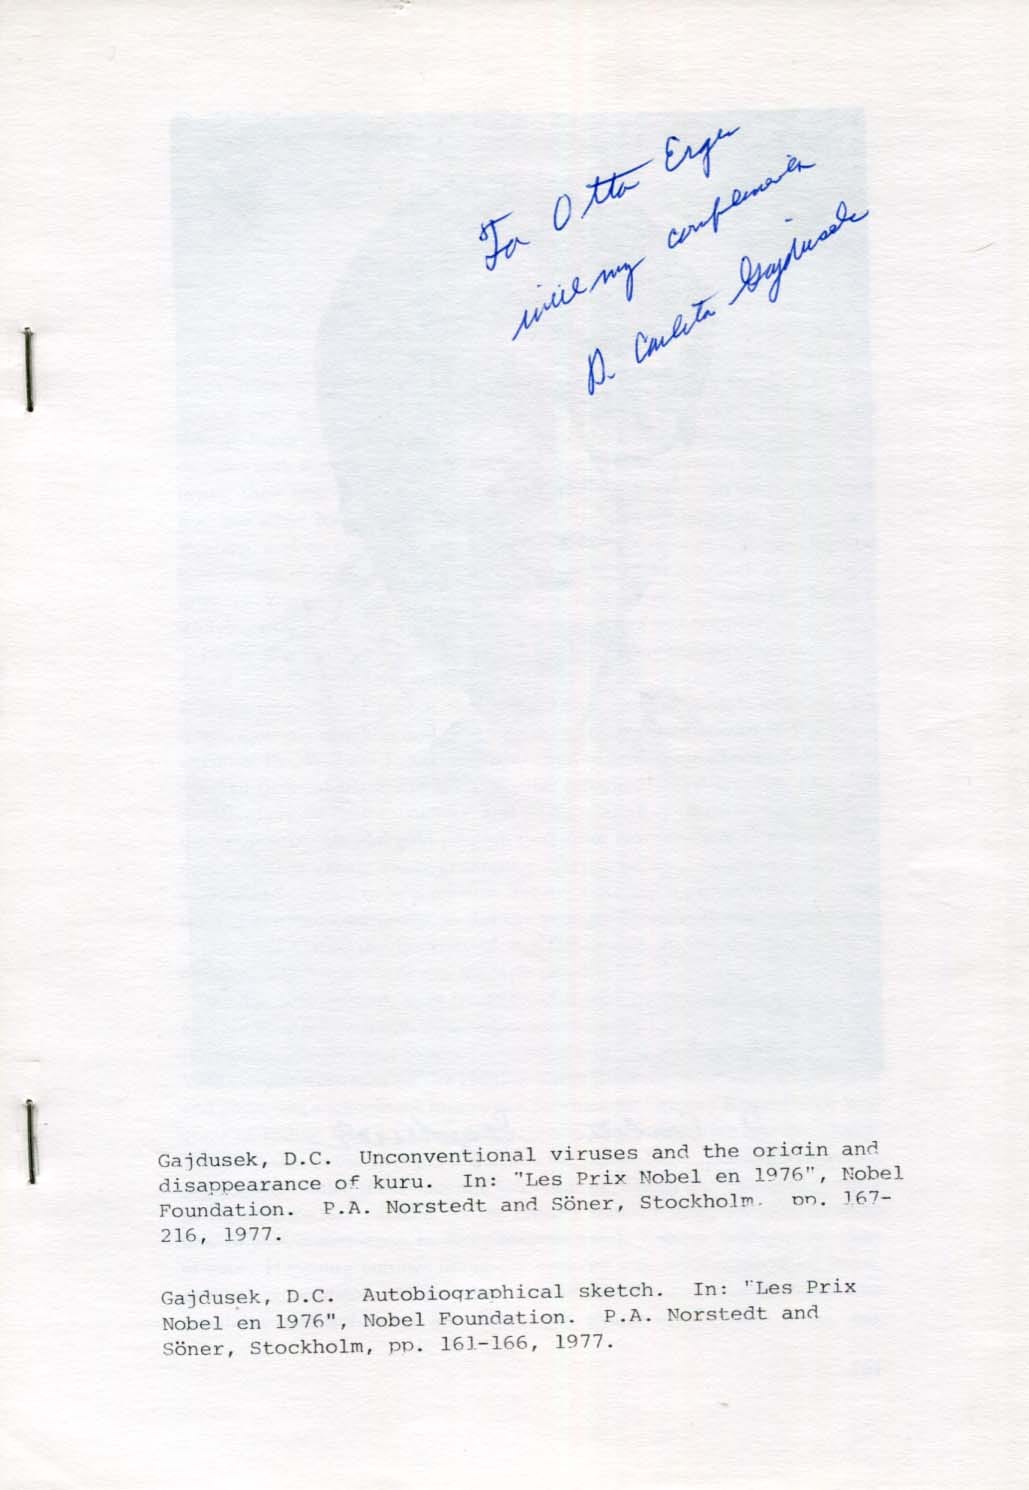 Daniel Carleton Gajdusek Autograph Autogramm | ID 8326018597013